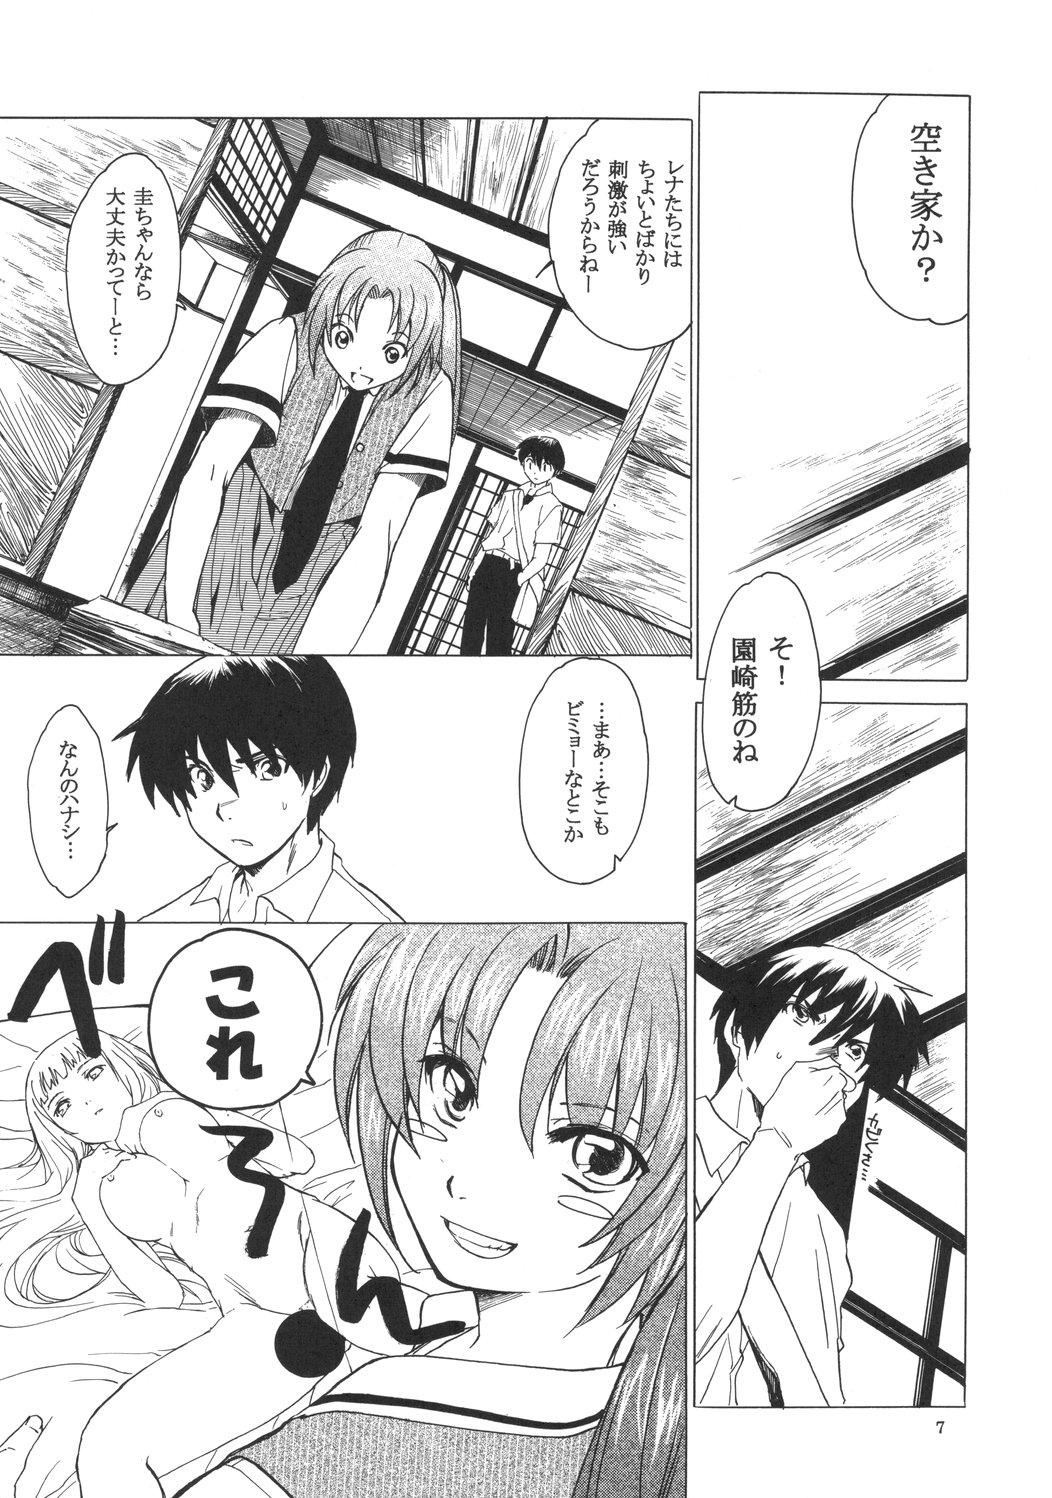 Girl Girl Manatsu no Oni - Higurashi no naku koro ni Ex Girlfriend - Page 6